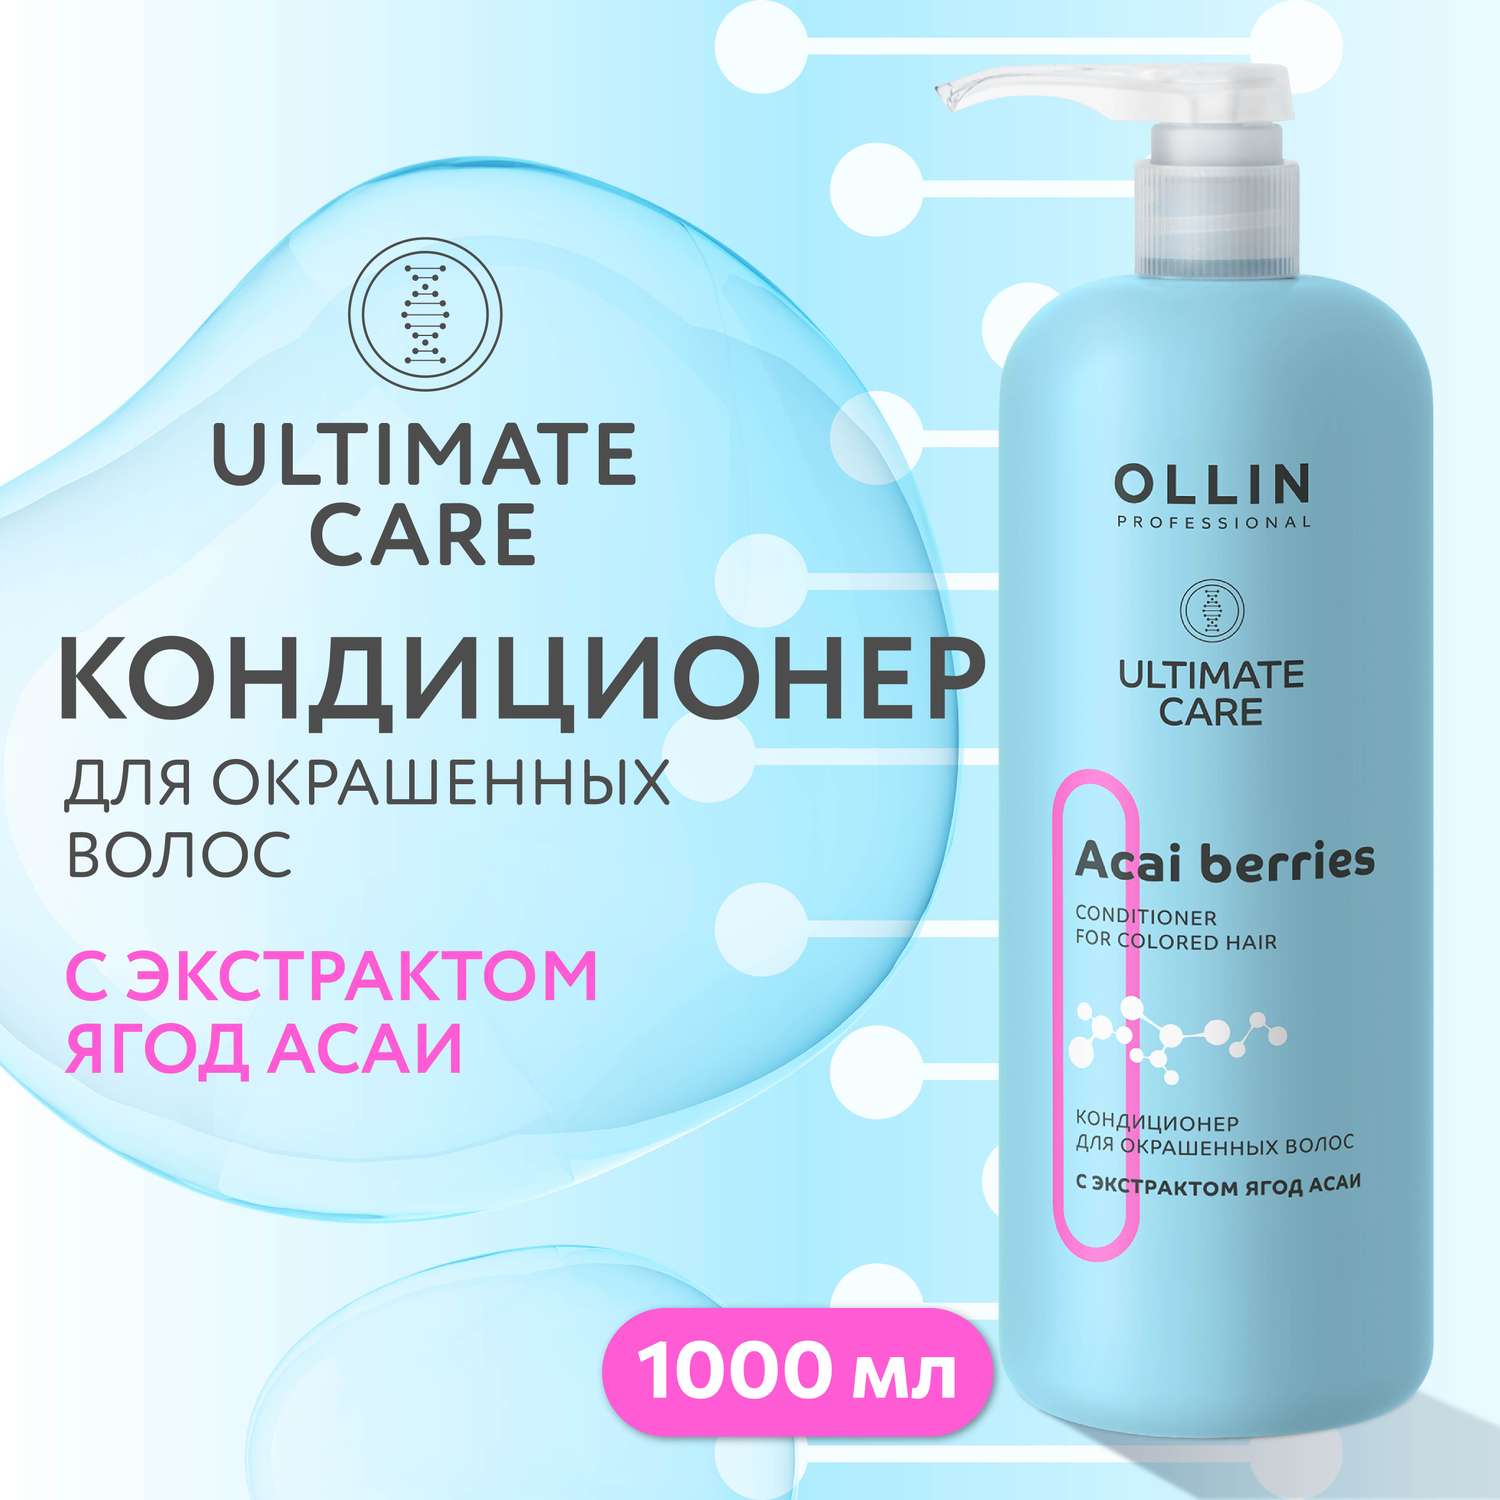 Кондиционер Ollin ultimate care для окрашенных волос с экстрактом ягод асаи 1000 мл - фото 2